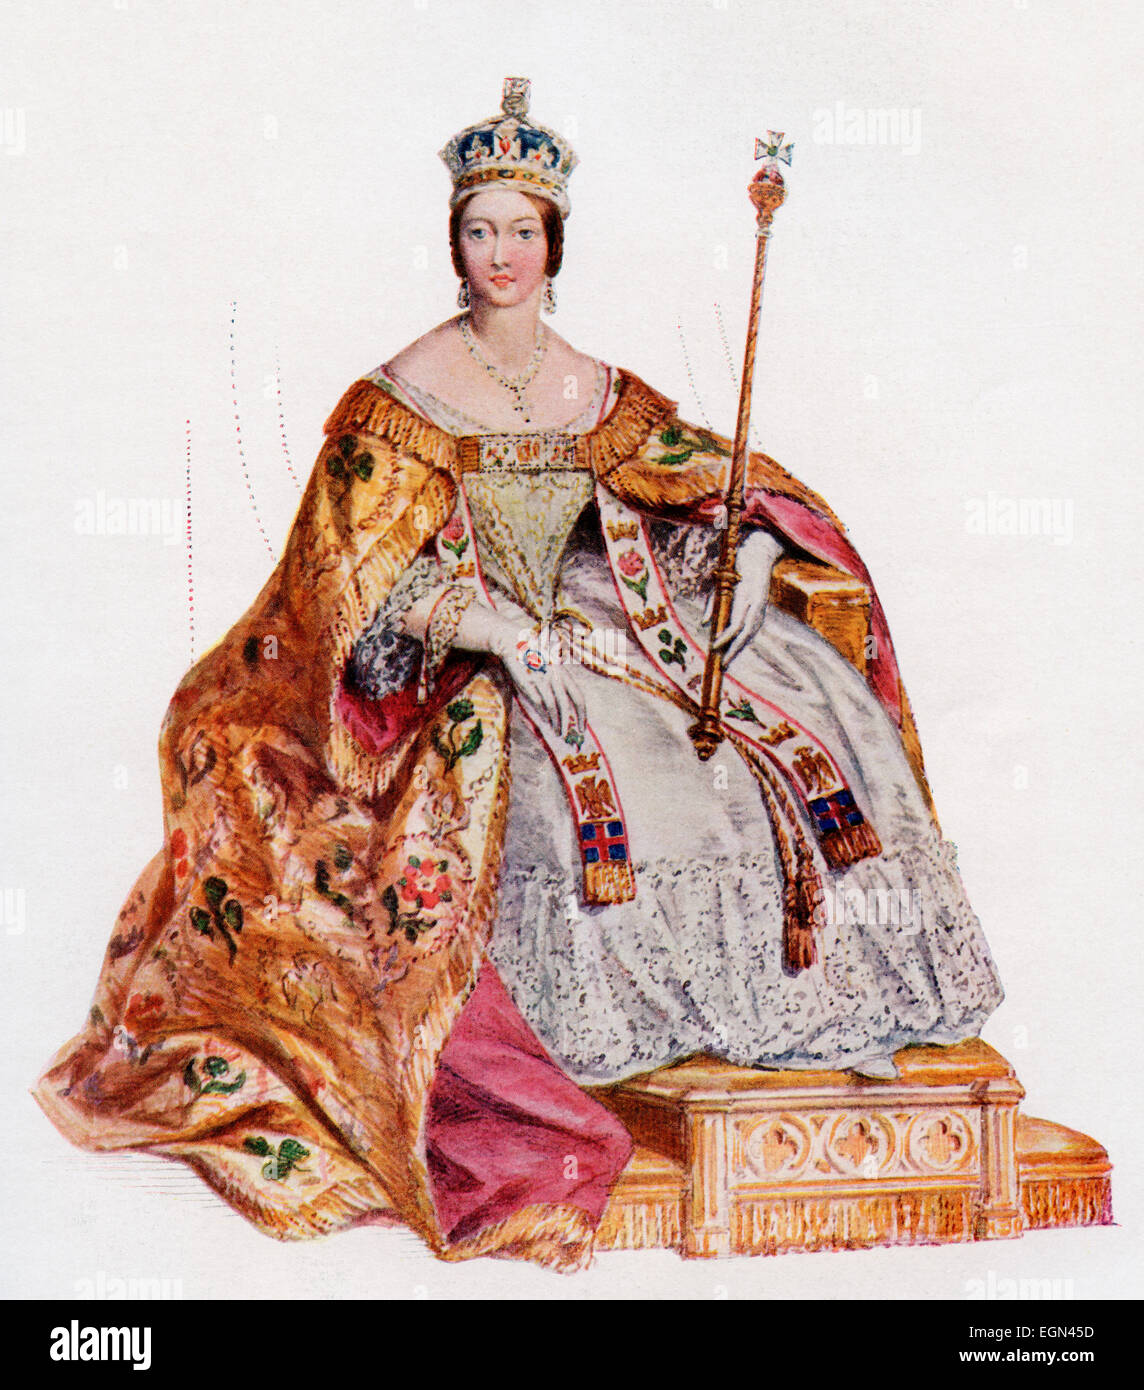 Victoria, 1819 - 1901, à l'occasion de son couronnement à l'abbaye de Westminster robes, 28 juin, 1838. La reine du Royaume-Uni de Grande-Bretagne et d'Irlande. Banque D'Images